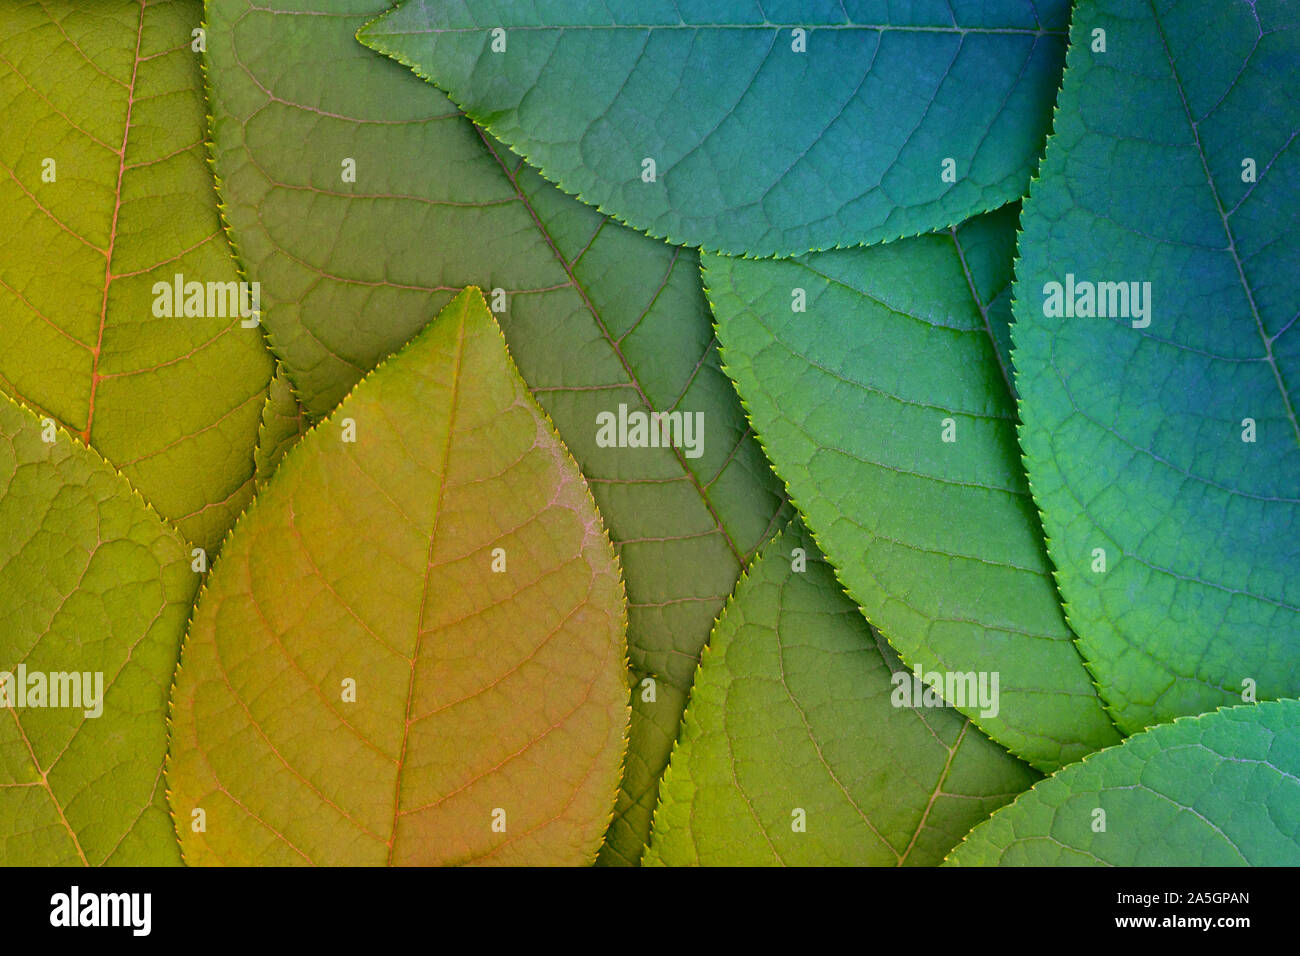 Layout astratta di foglie con diagonale di separazione di colori inconsueti Foto Stock